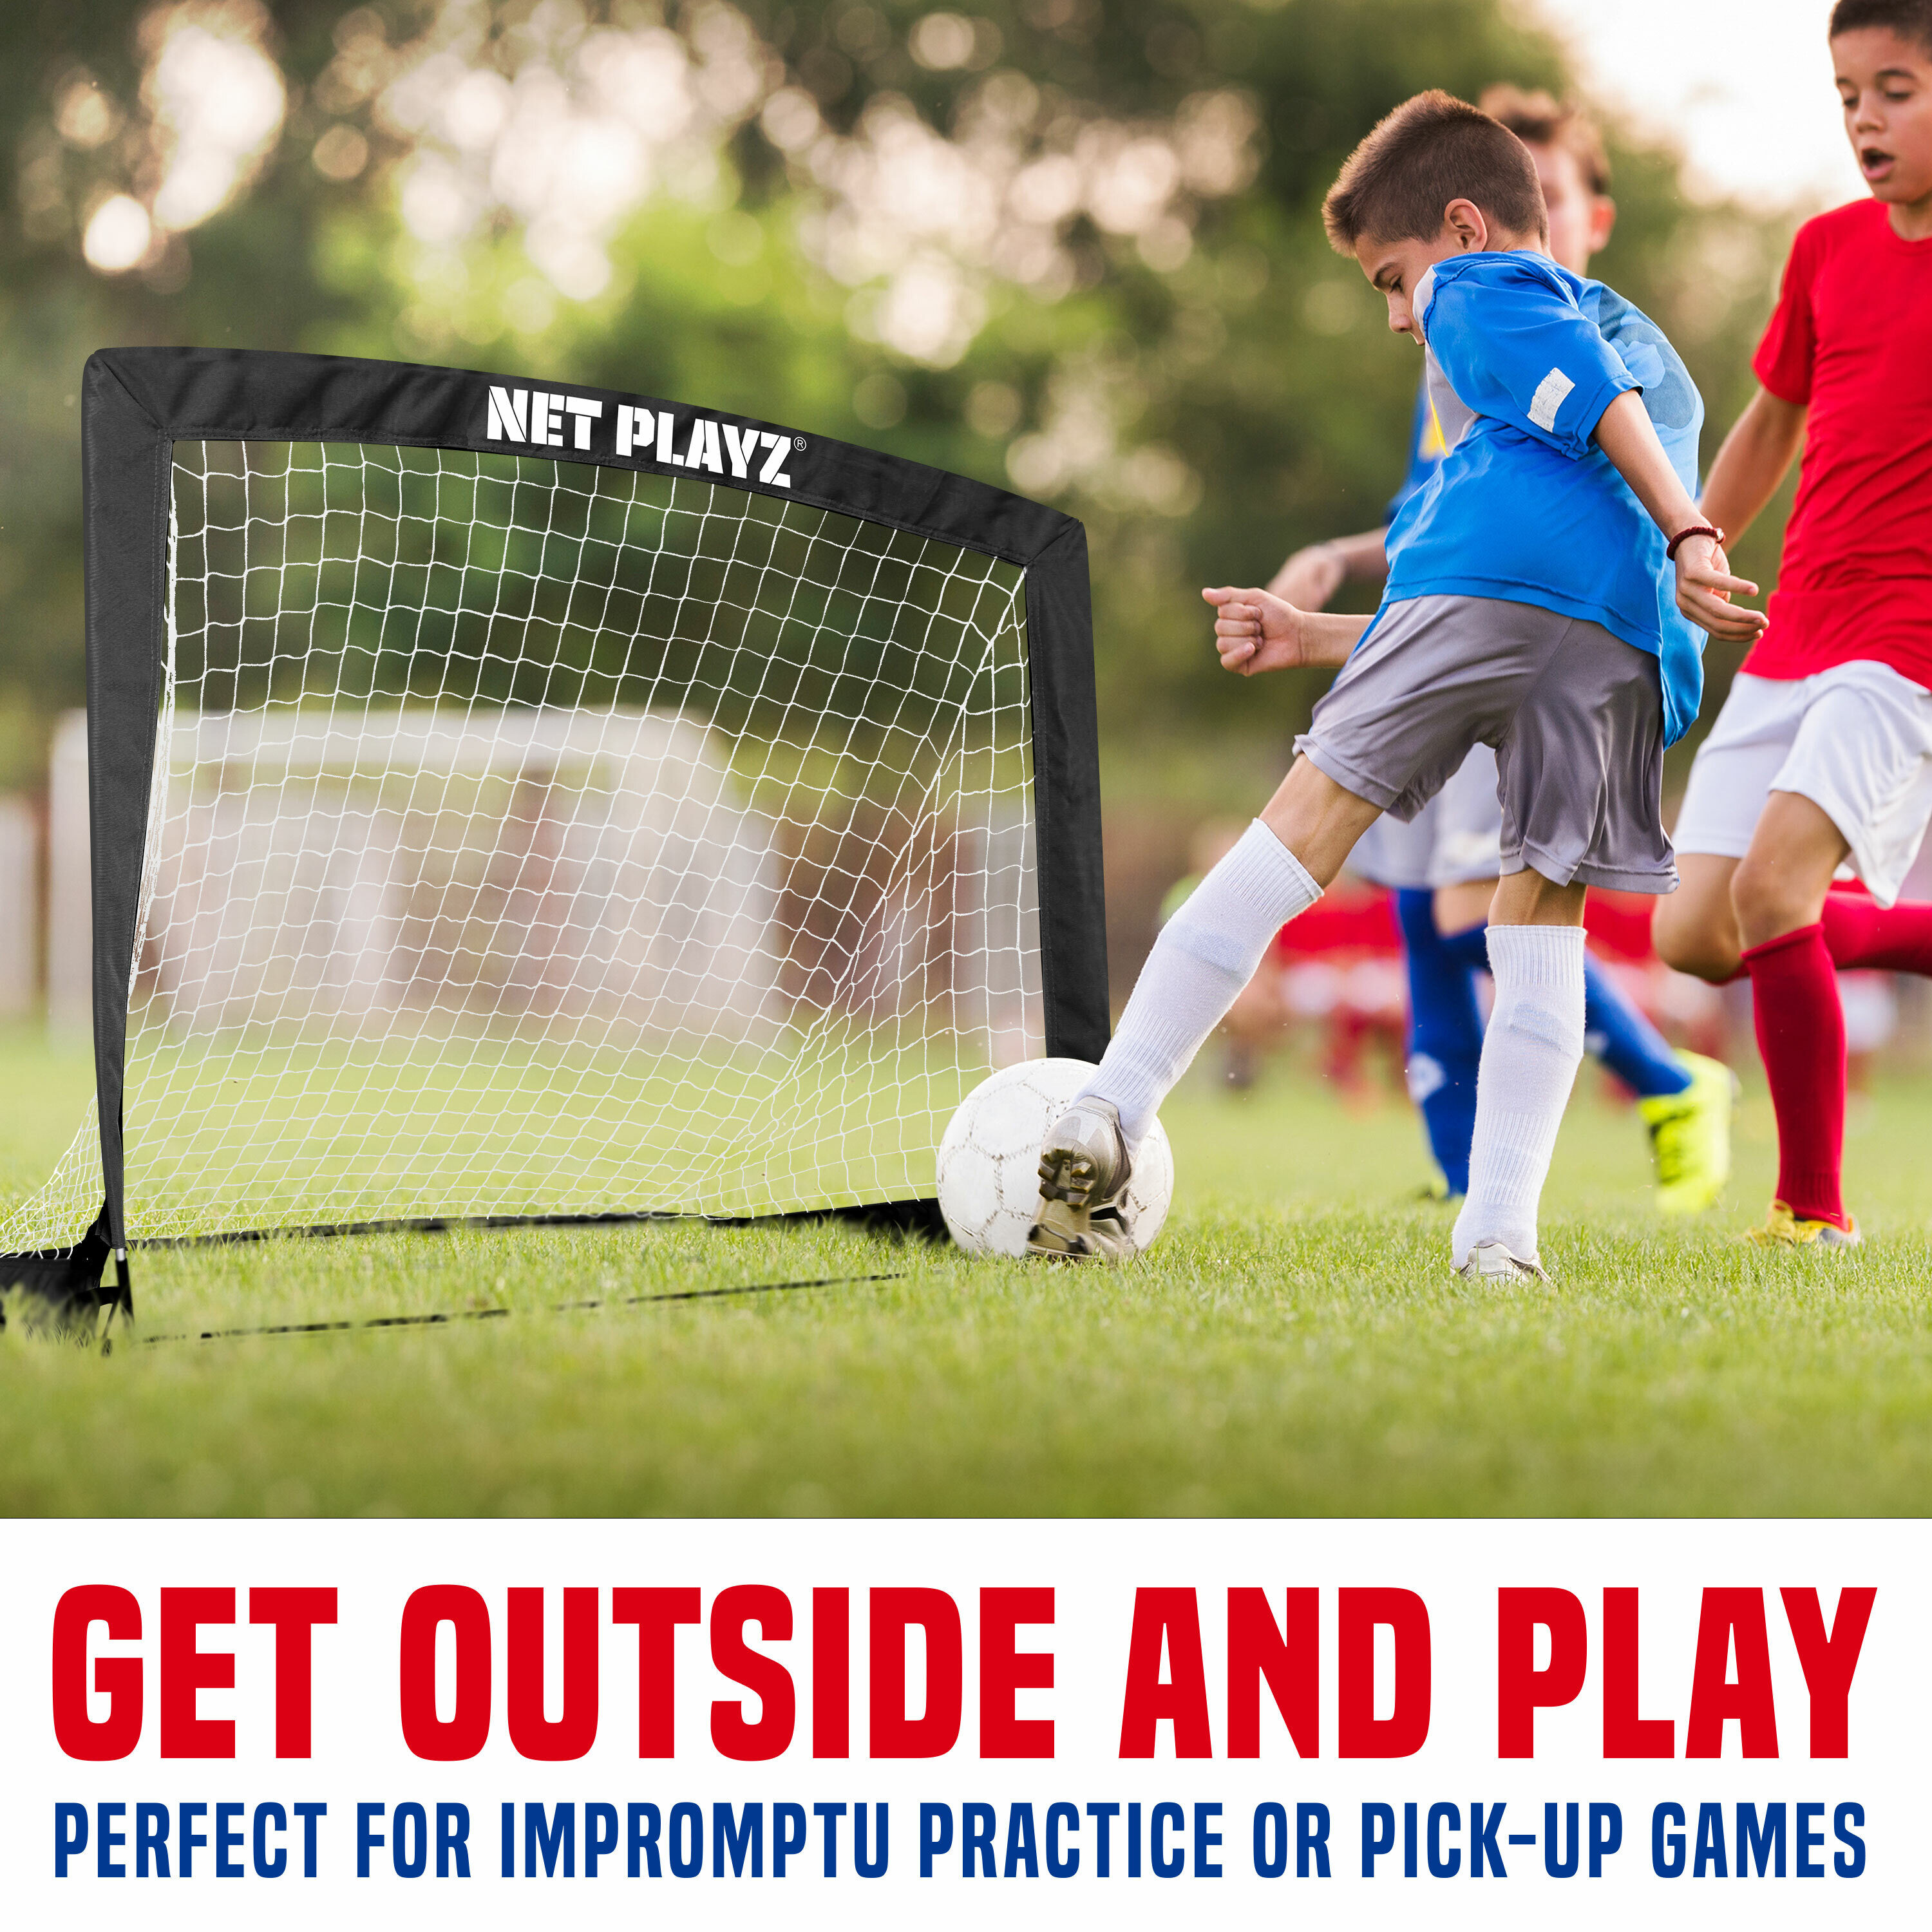 NET PLAYZ Soccer Goals - Portable Football Goals, Pop-up Net for